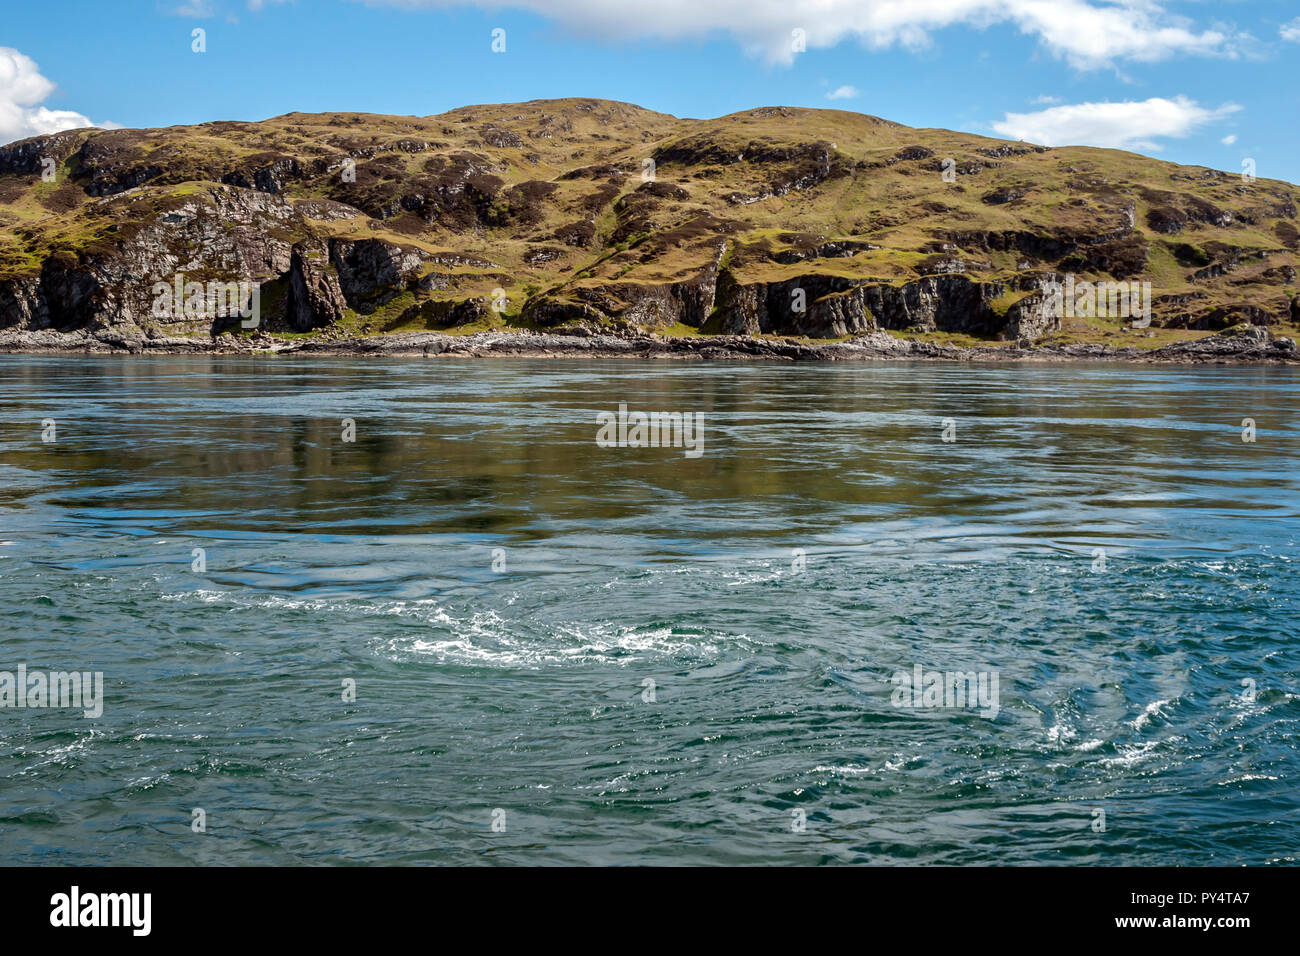 Whirlpool de marée dans le golfe de Corryvreckan entre les îles de Jura et de Scarba (vu) dans les îles de l'ouest ARGYLL & BUTE Ecosse UK Banque D'Images